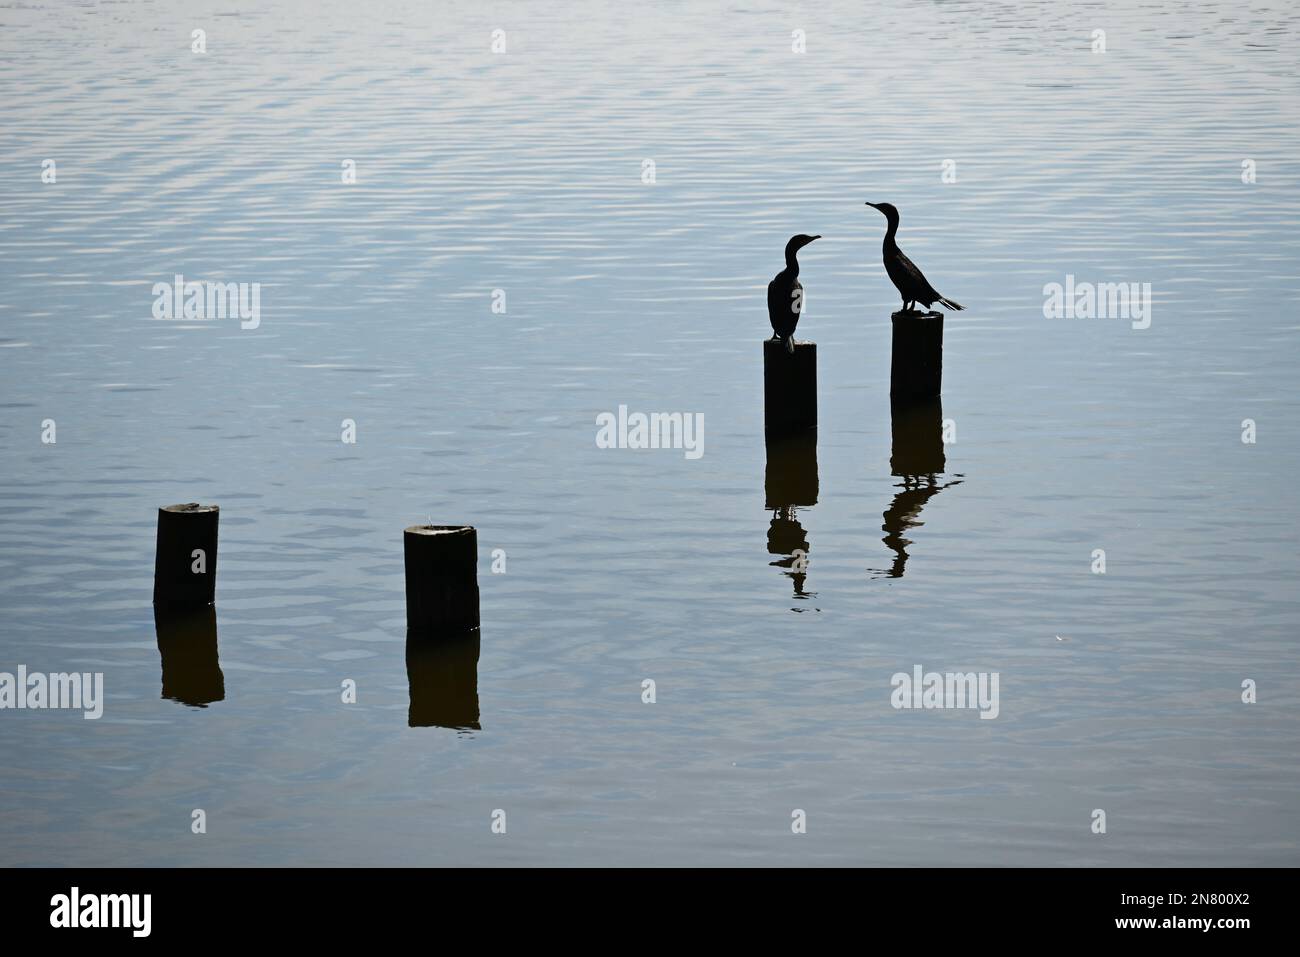 Le soleil silhouettes deux oiseaux cormorans sur des pilotages dans un lac. Banque D'Images